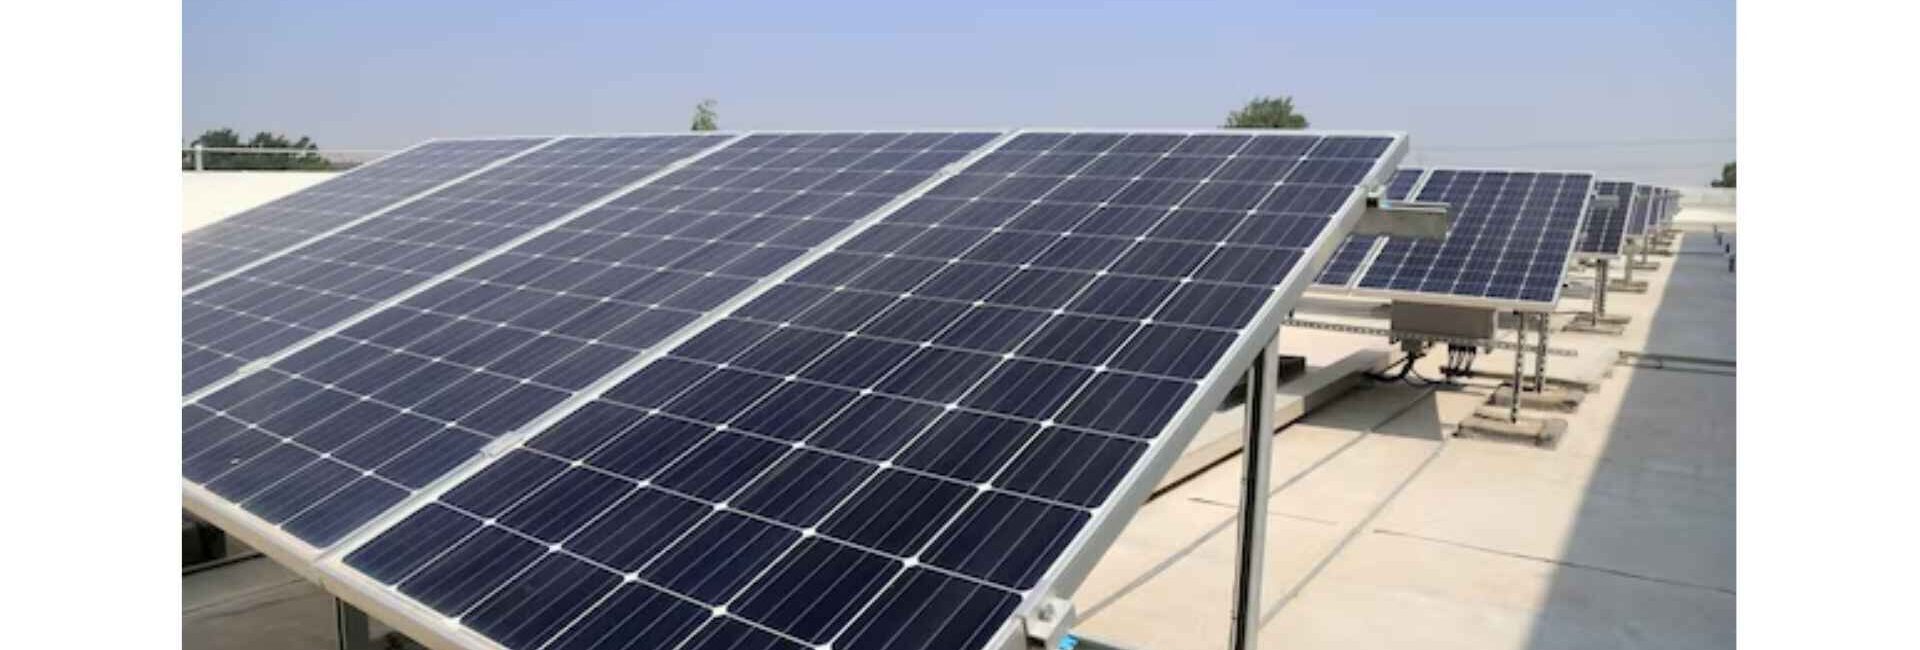 Bloomtech Solar Solutions Pvt. Ltd. - Solar System Dealer in Noida